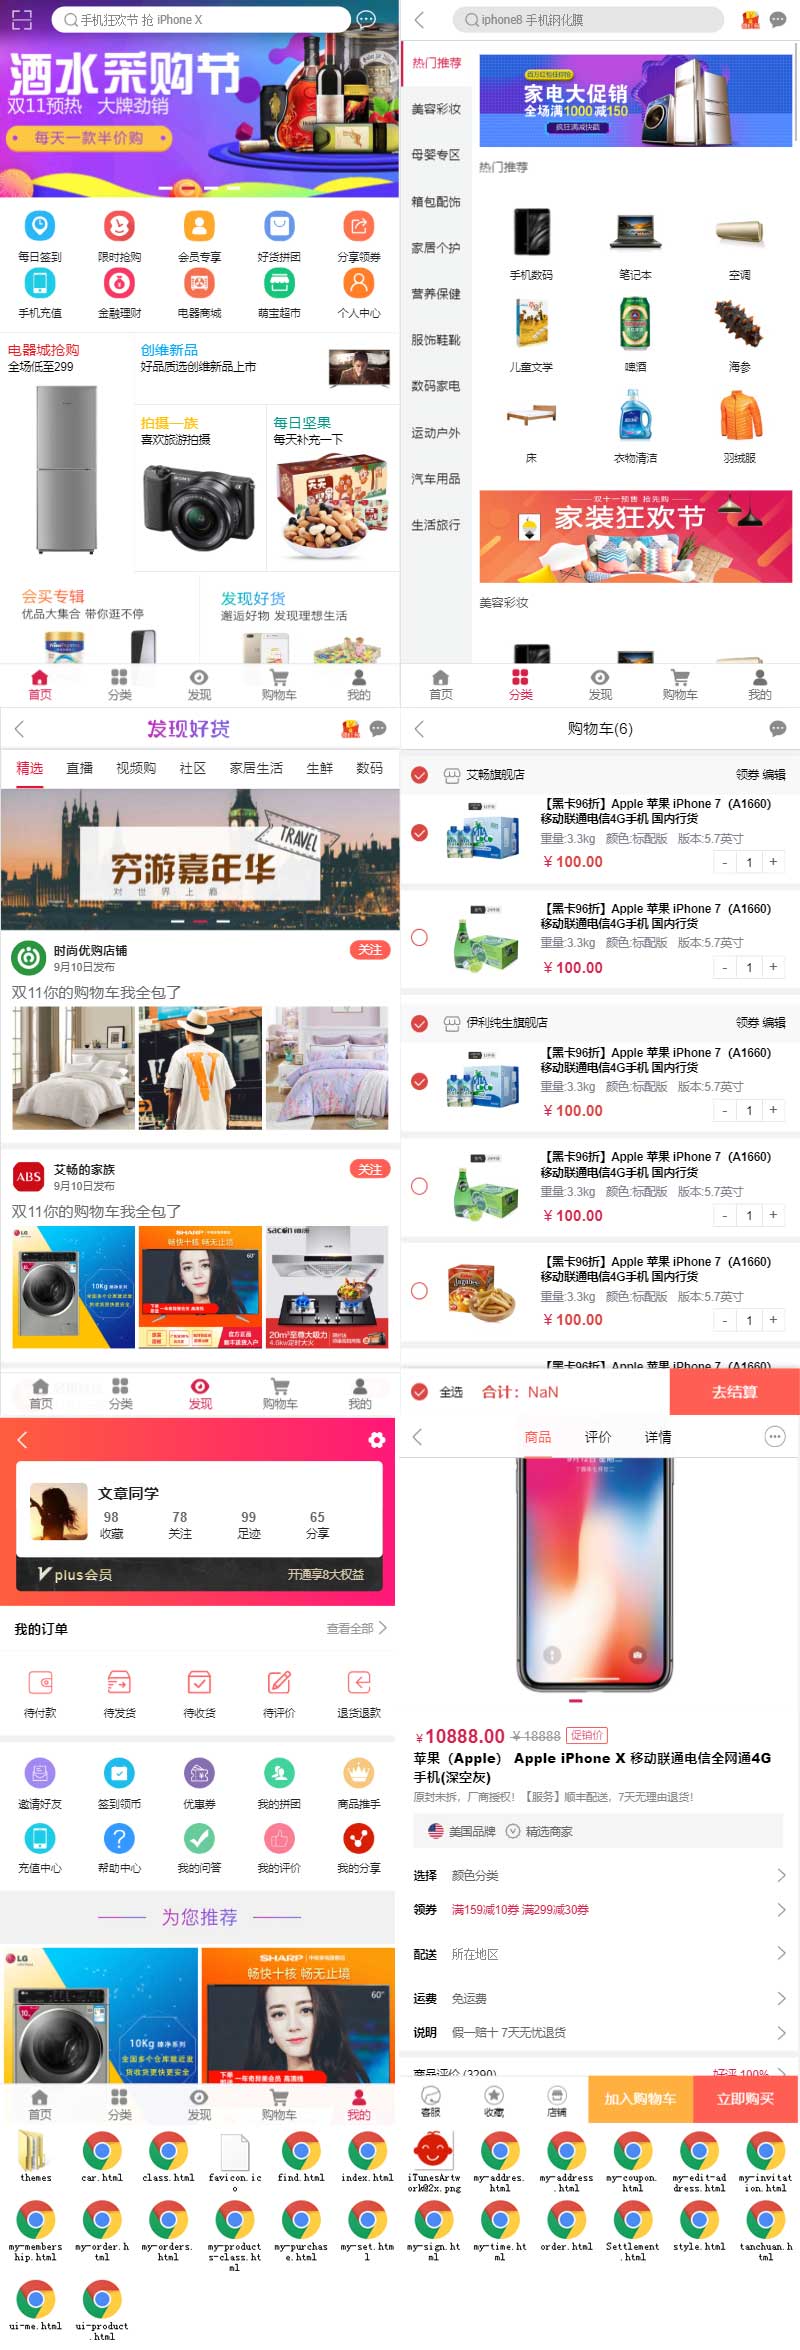 H5仿淘宝移动端大型综合购物商城app模板